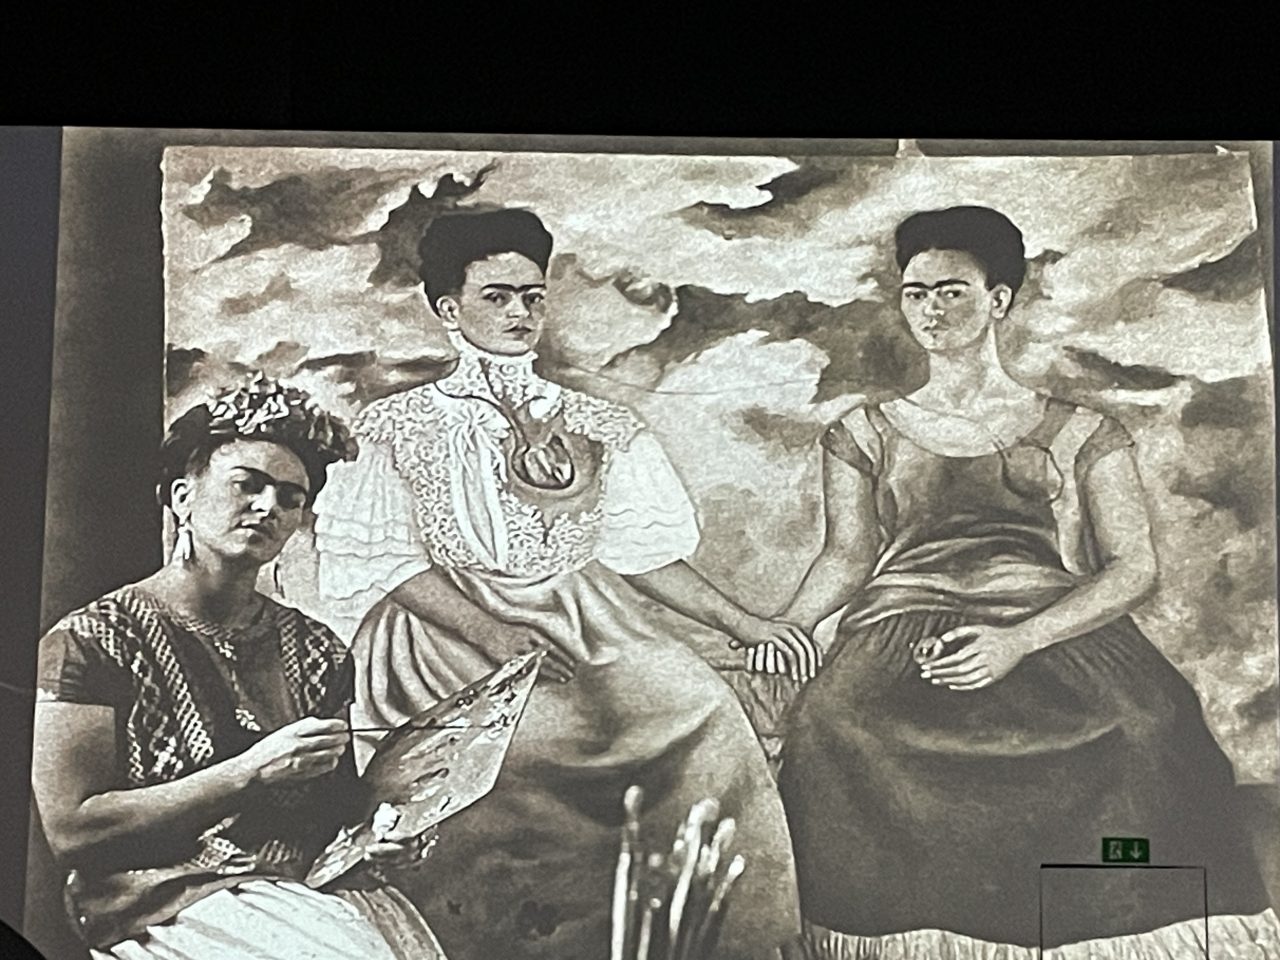 Frida Kahlo mit Malutensilien vor einem ihrer Bilder - Projektion